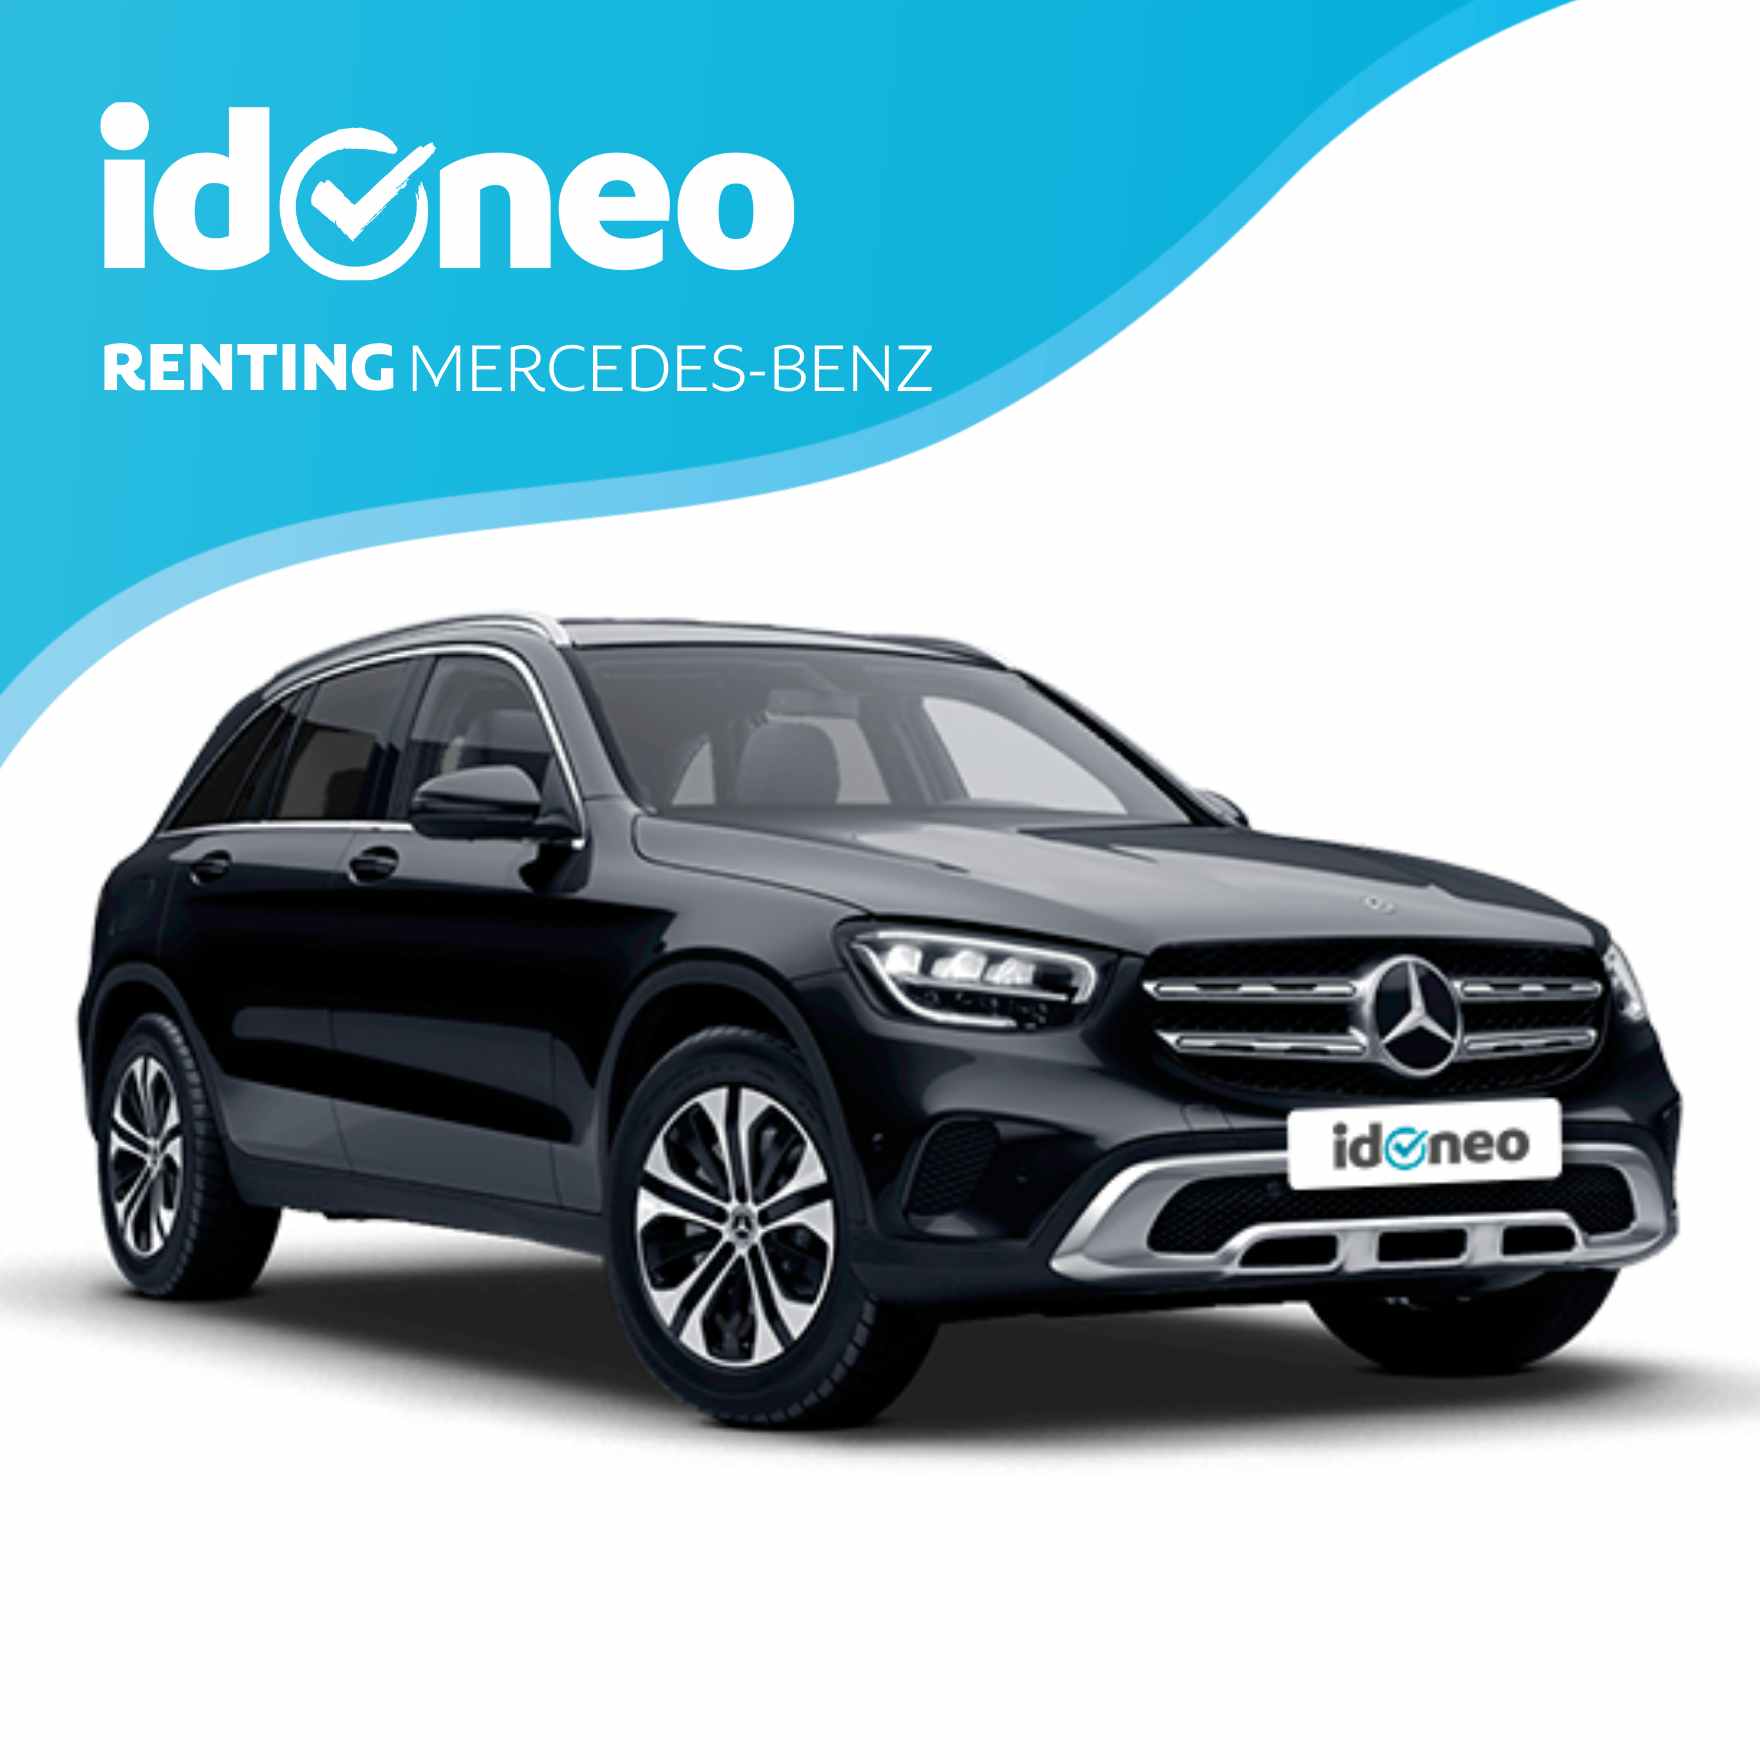 Renting Mercedes Benz. entrada | idoneo